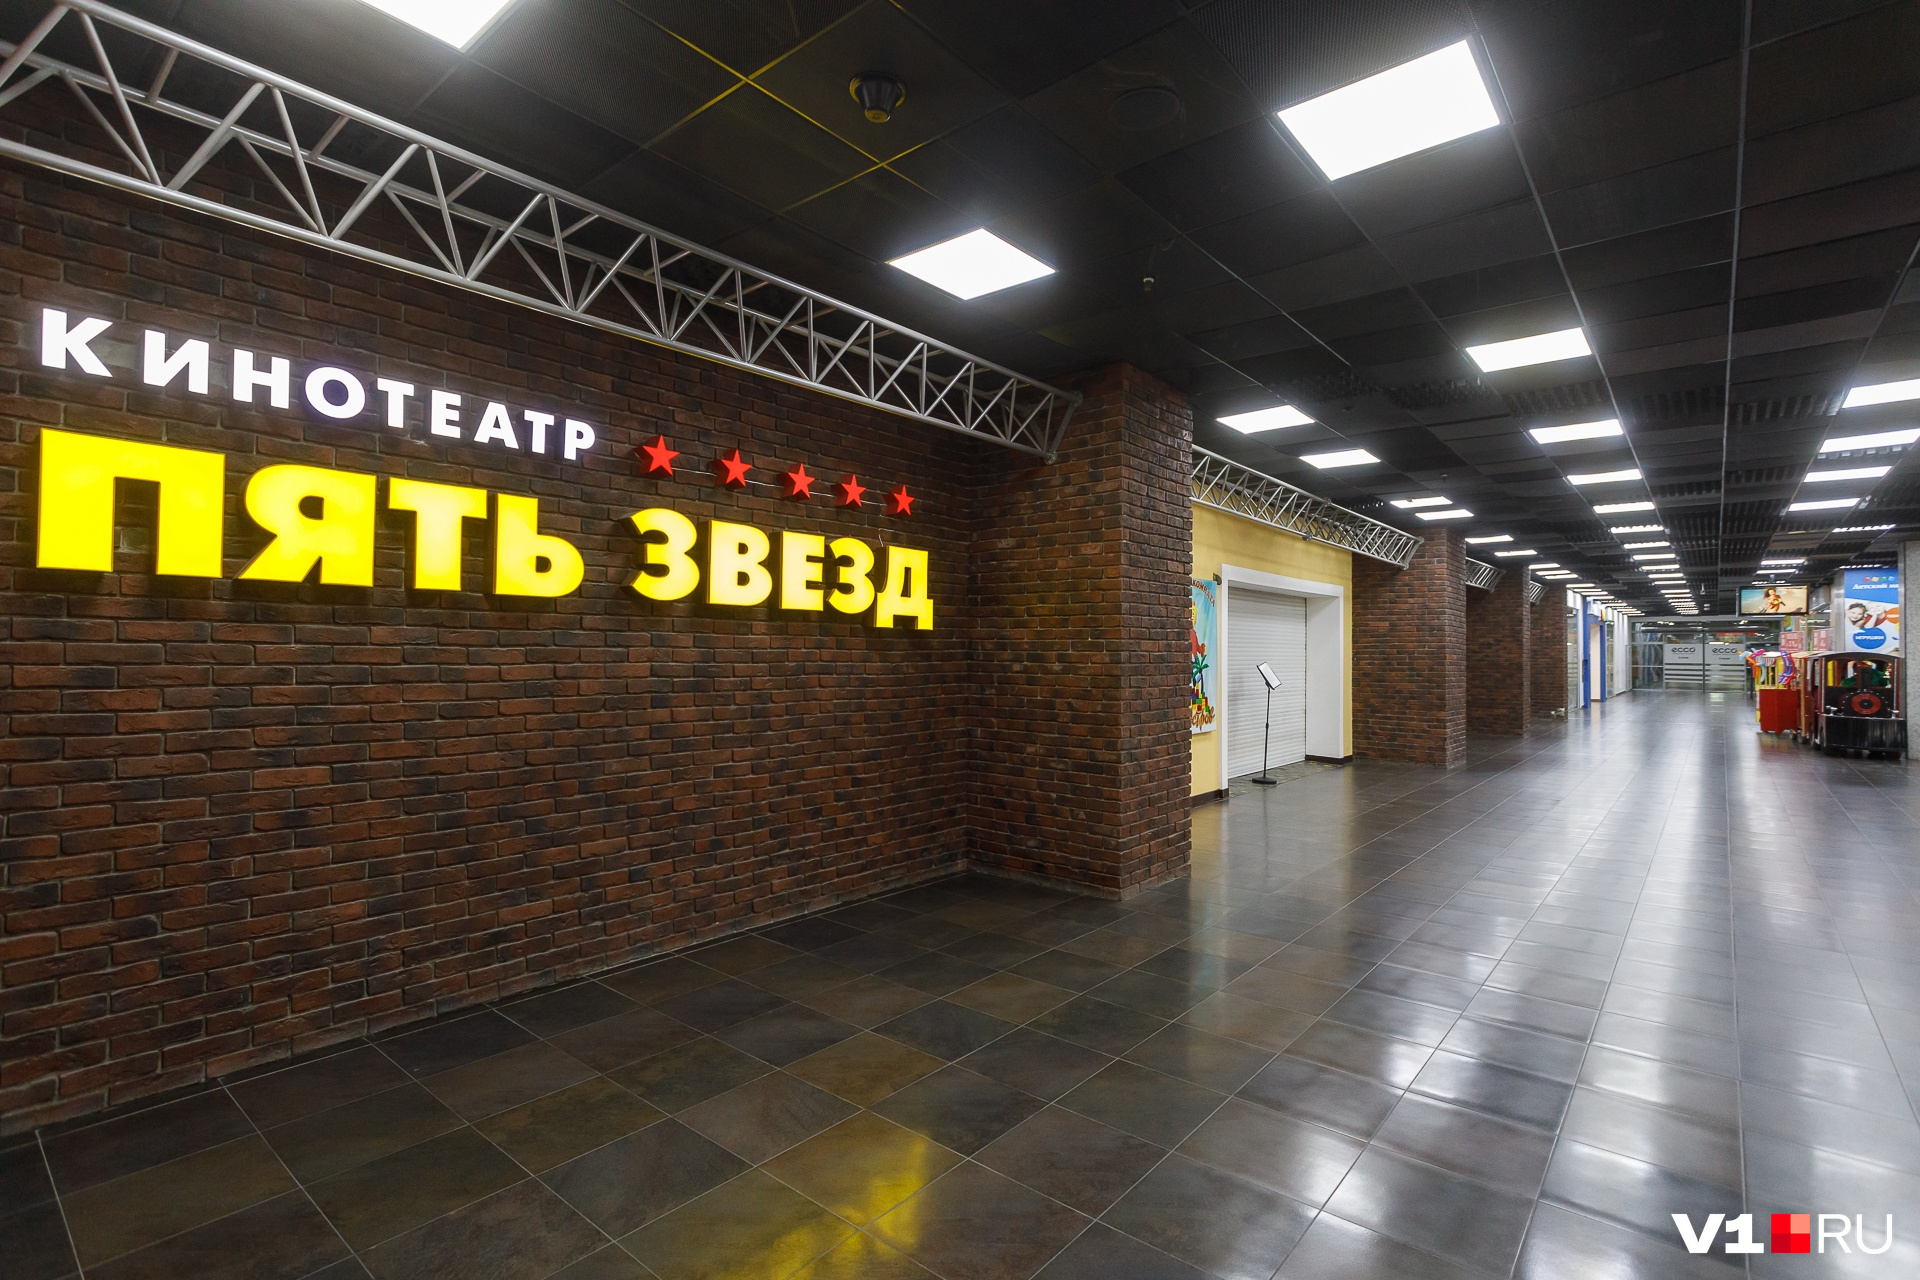 Кинотеатр в Ворошиловском торговом центре закрылся еще на прошлой неделе